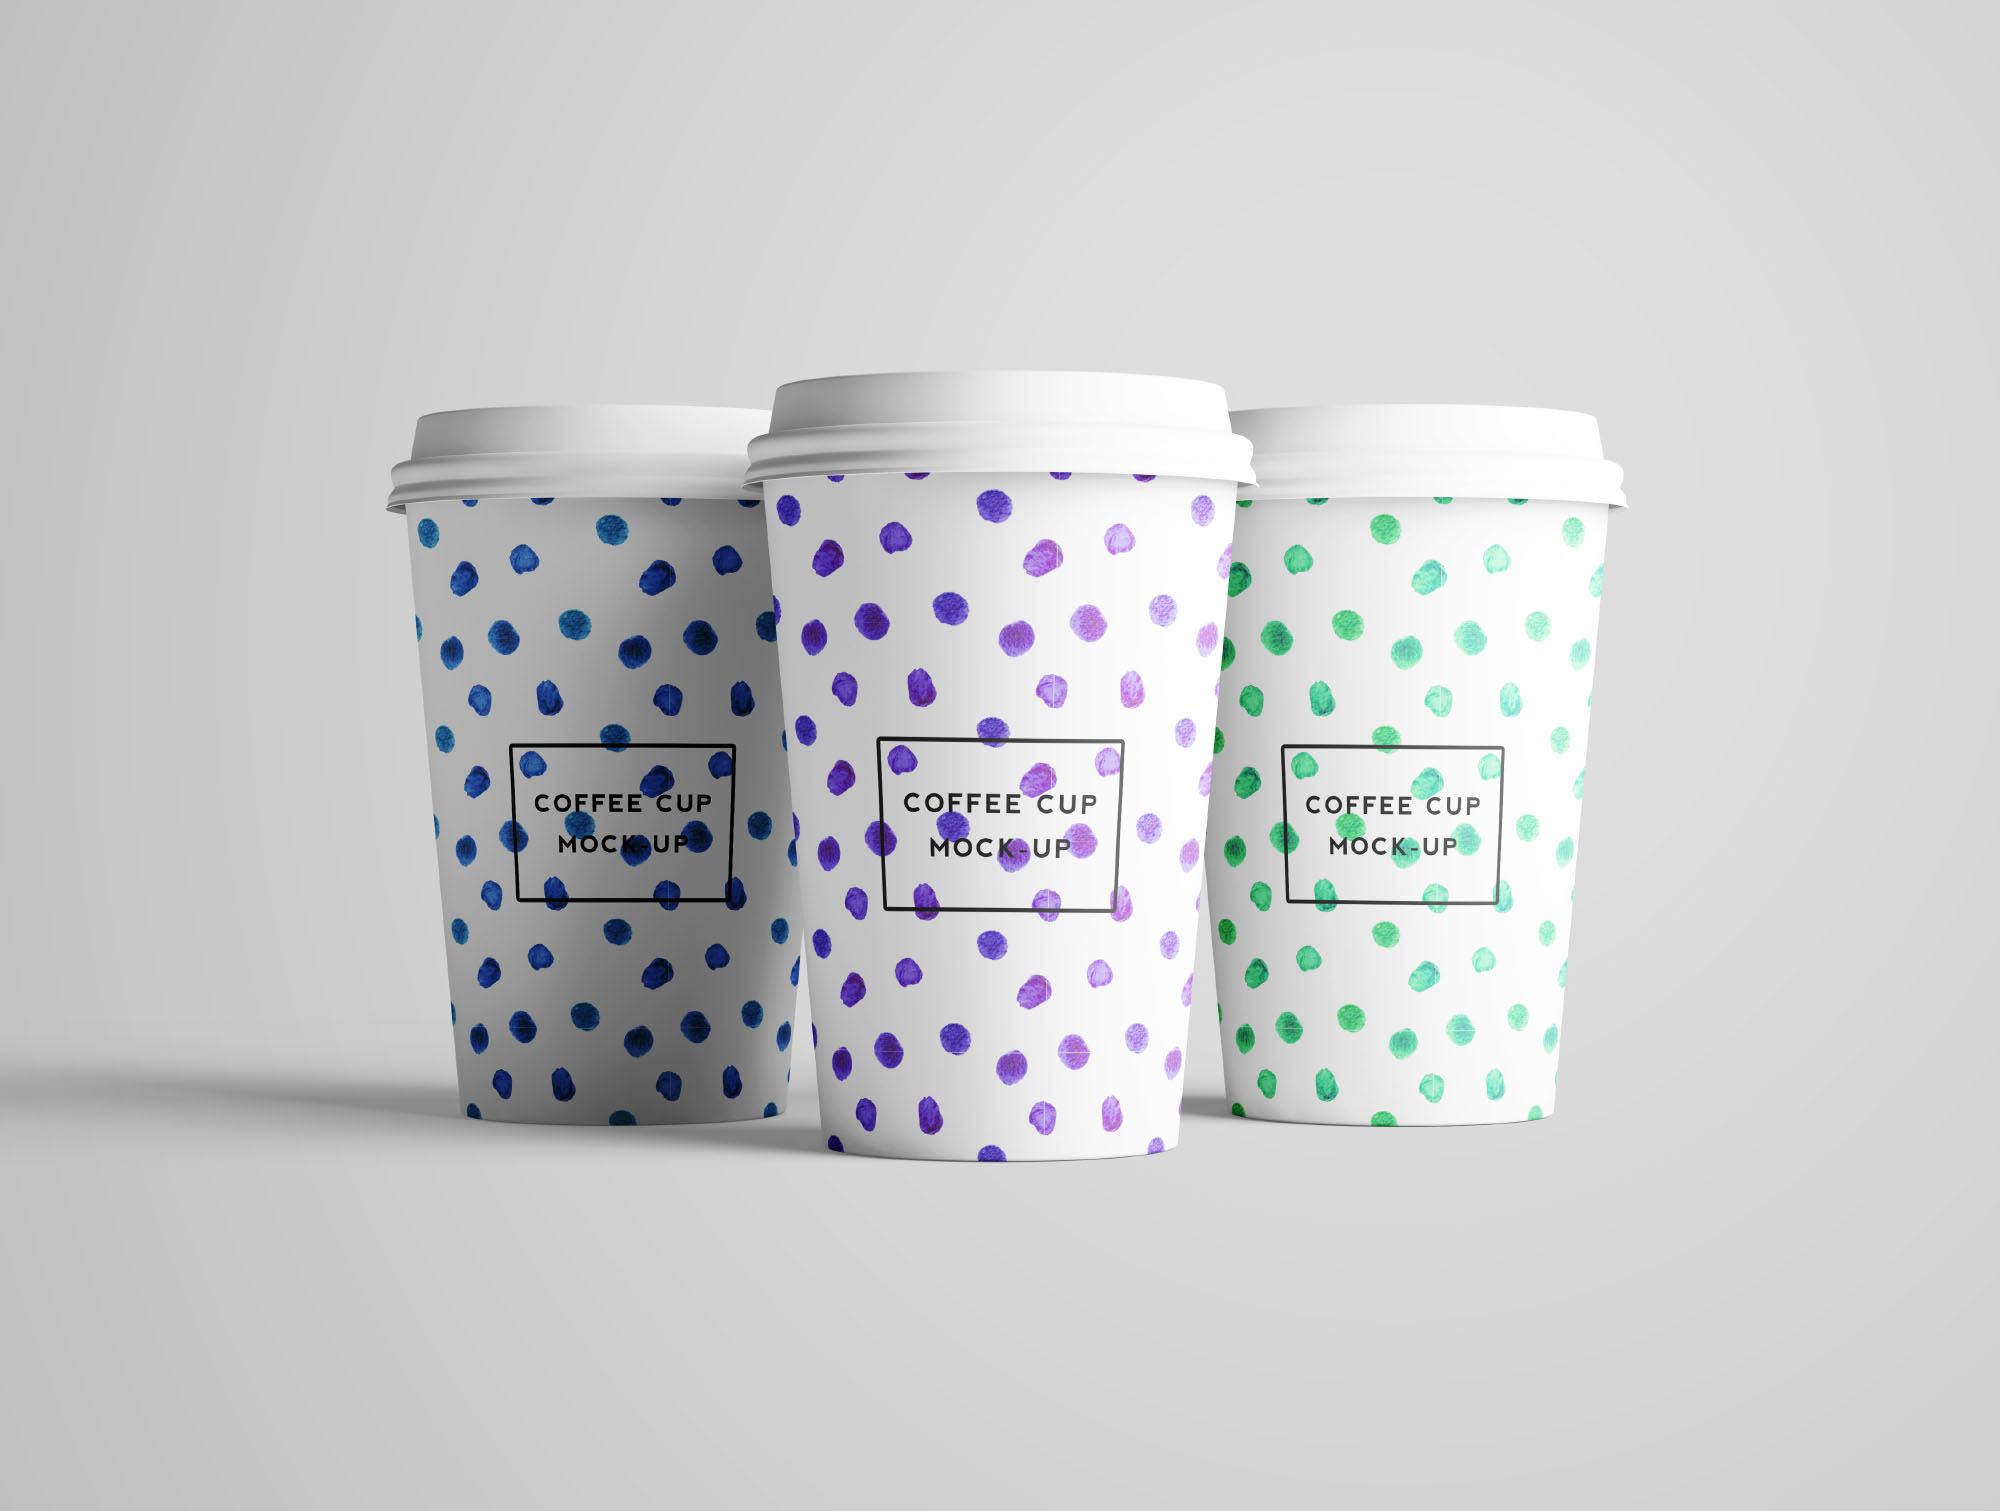 7个咖啡纸杯设计图PSD样机模板 7 PSD Coffee Cup Mockups插图(4)